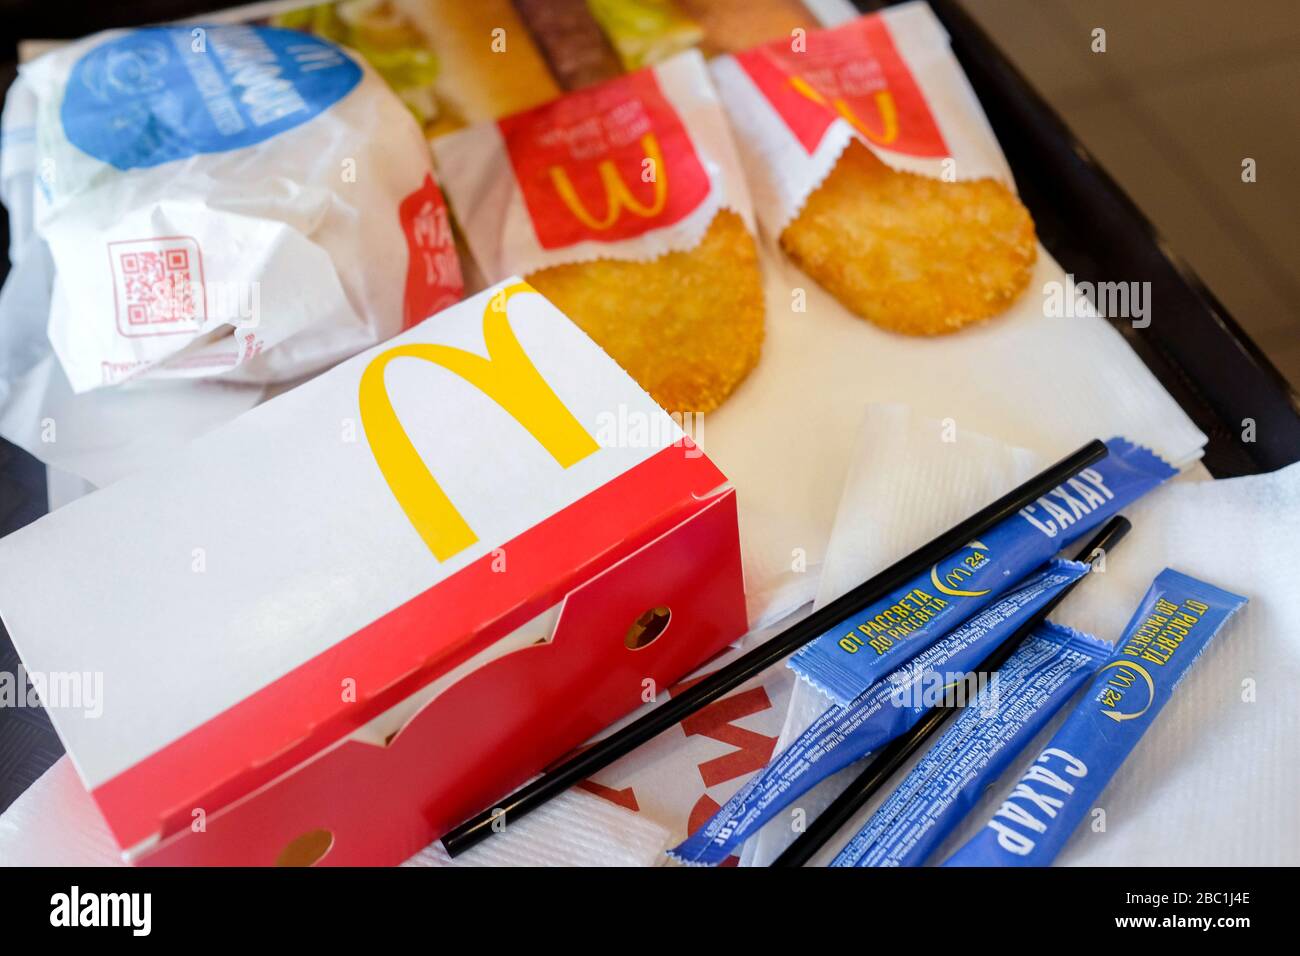 Essen bei McDonald's. Eine Reihe von Frühstücksprodukten auf einem Tablett Dranik, einrosafarbene Zuckerpakete, Burger, Servietten, Strohhalme. Stockfoto